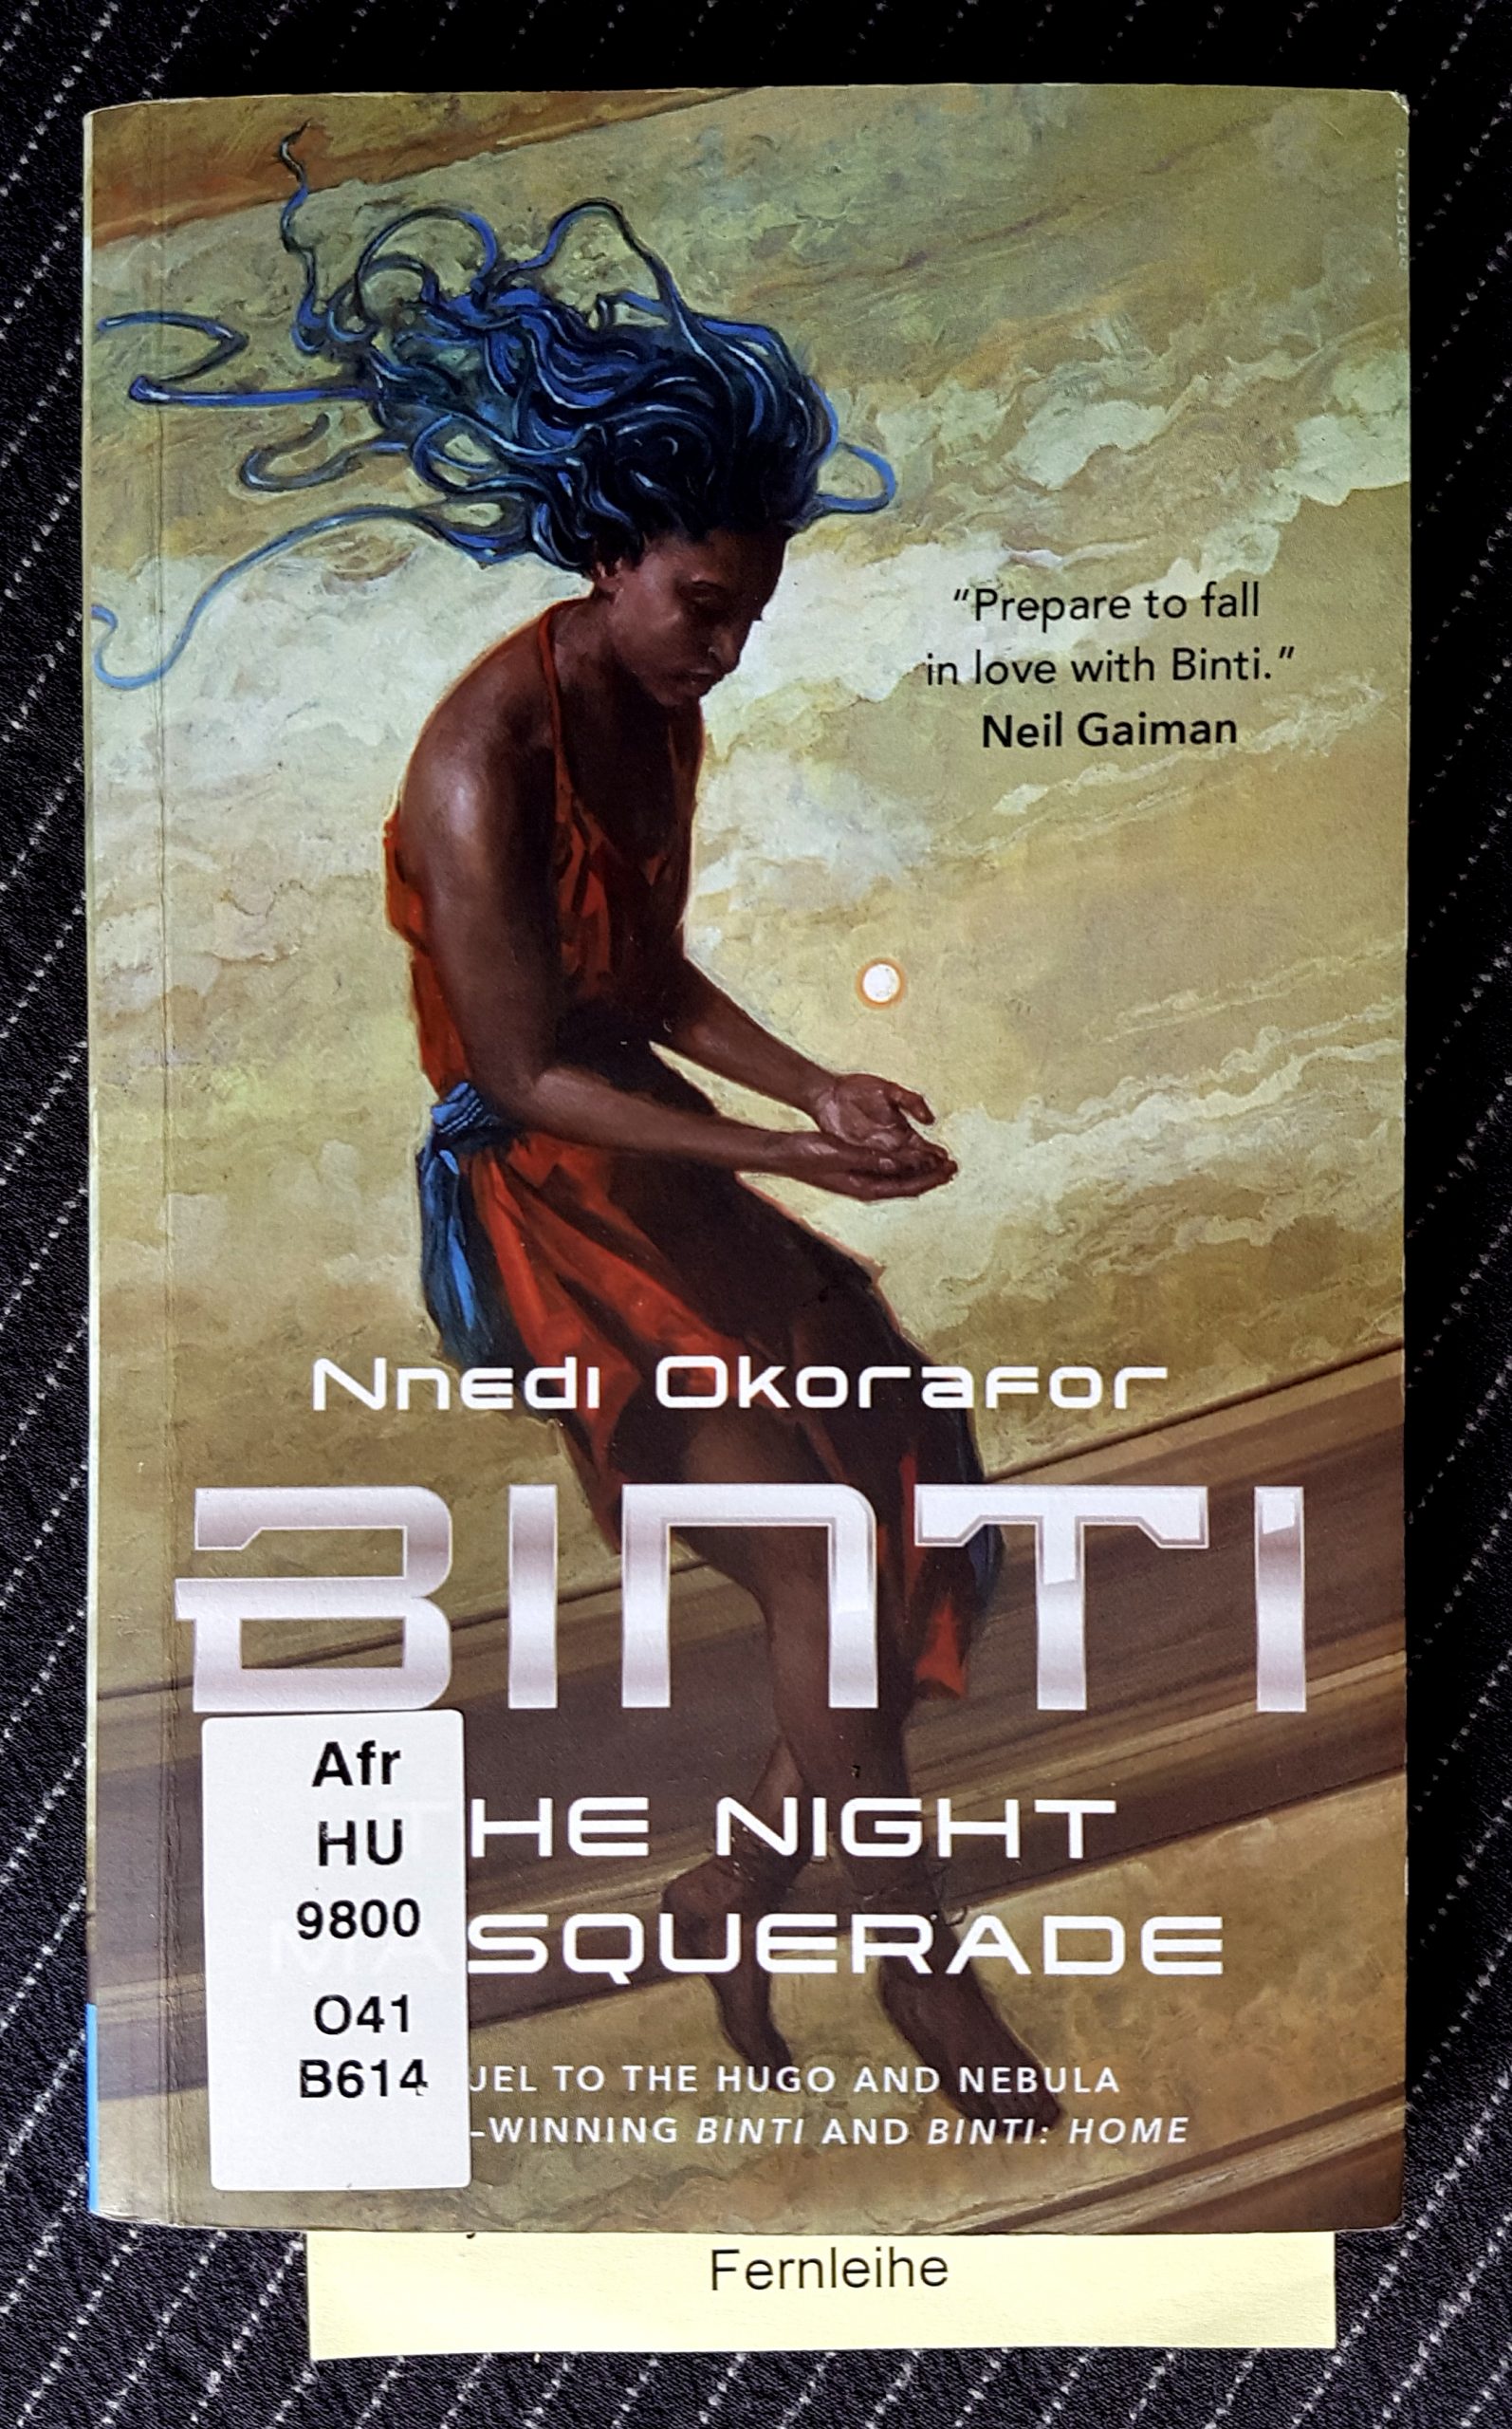 Buchdeckel von »Binti - The night Masquerade« von Nnedi Okorafor. Eine junge schwarze Person mit blauen tentakeligen Haaren und orangefarbenem Kleid sitzt auf einem hellen Steinsockel. Über den geöffneten Händen im Schoß schwebt eine weiße Kugel. Aus dem Buch guckt ein Zettel mit dem Wort Fernleihe.